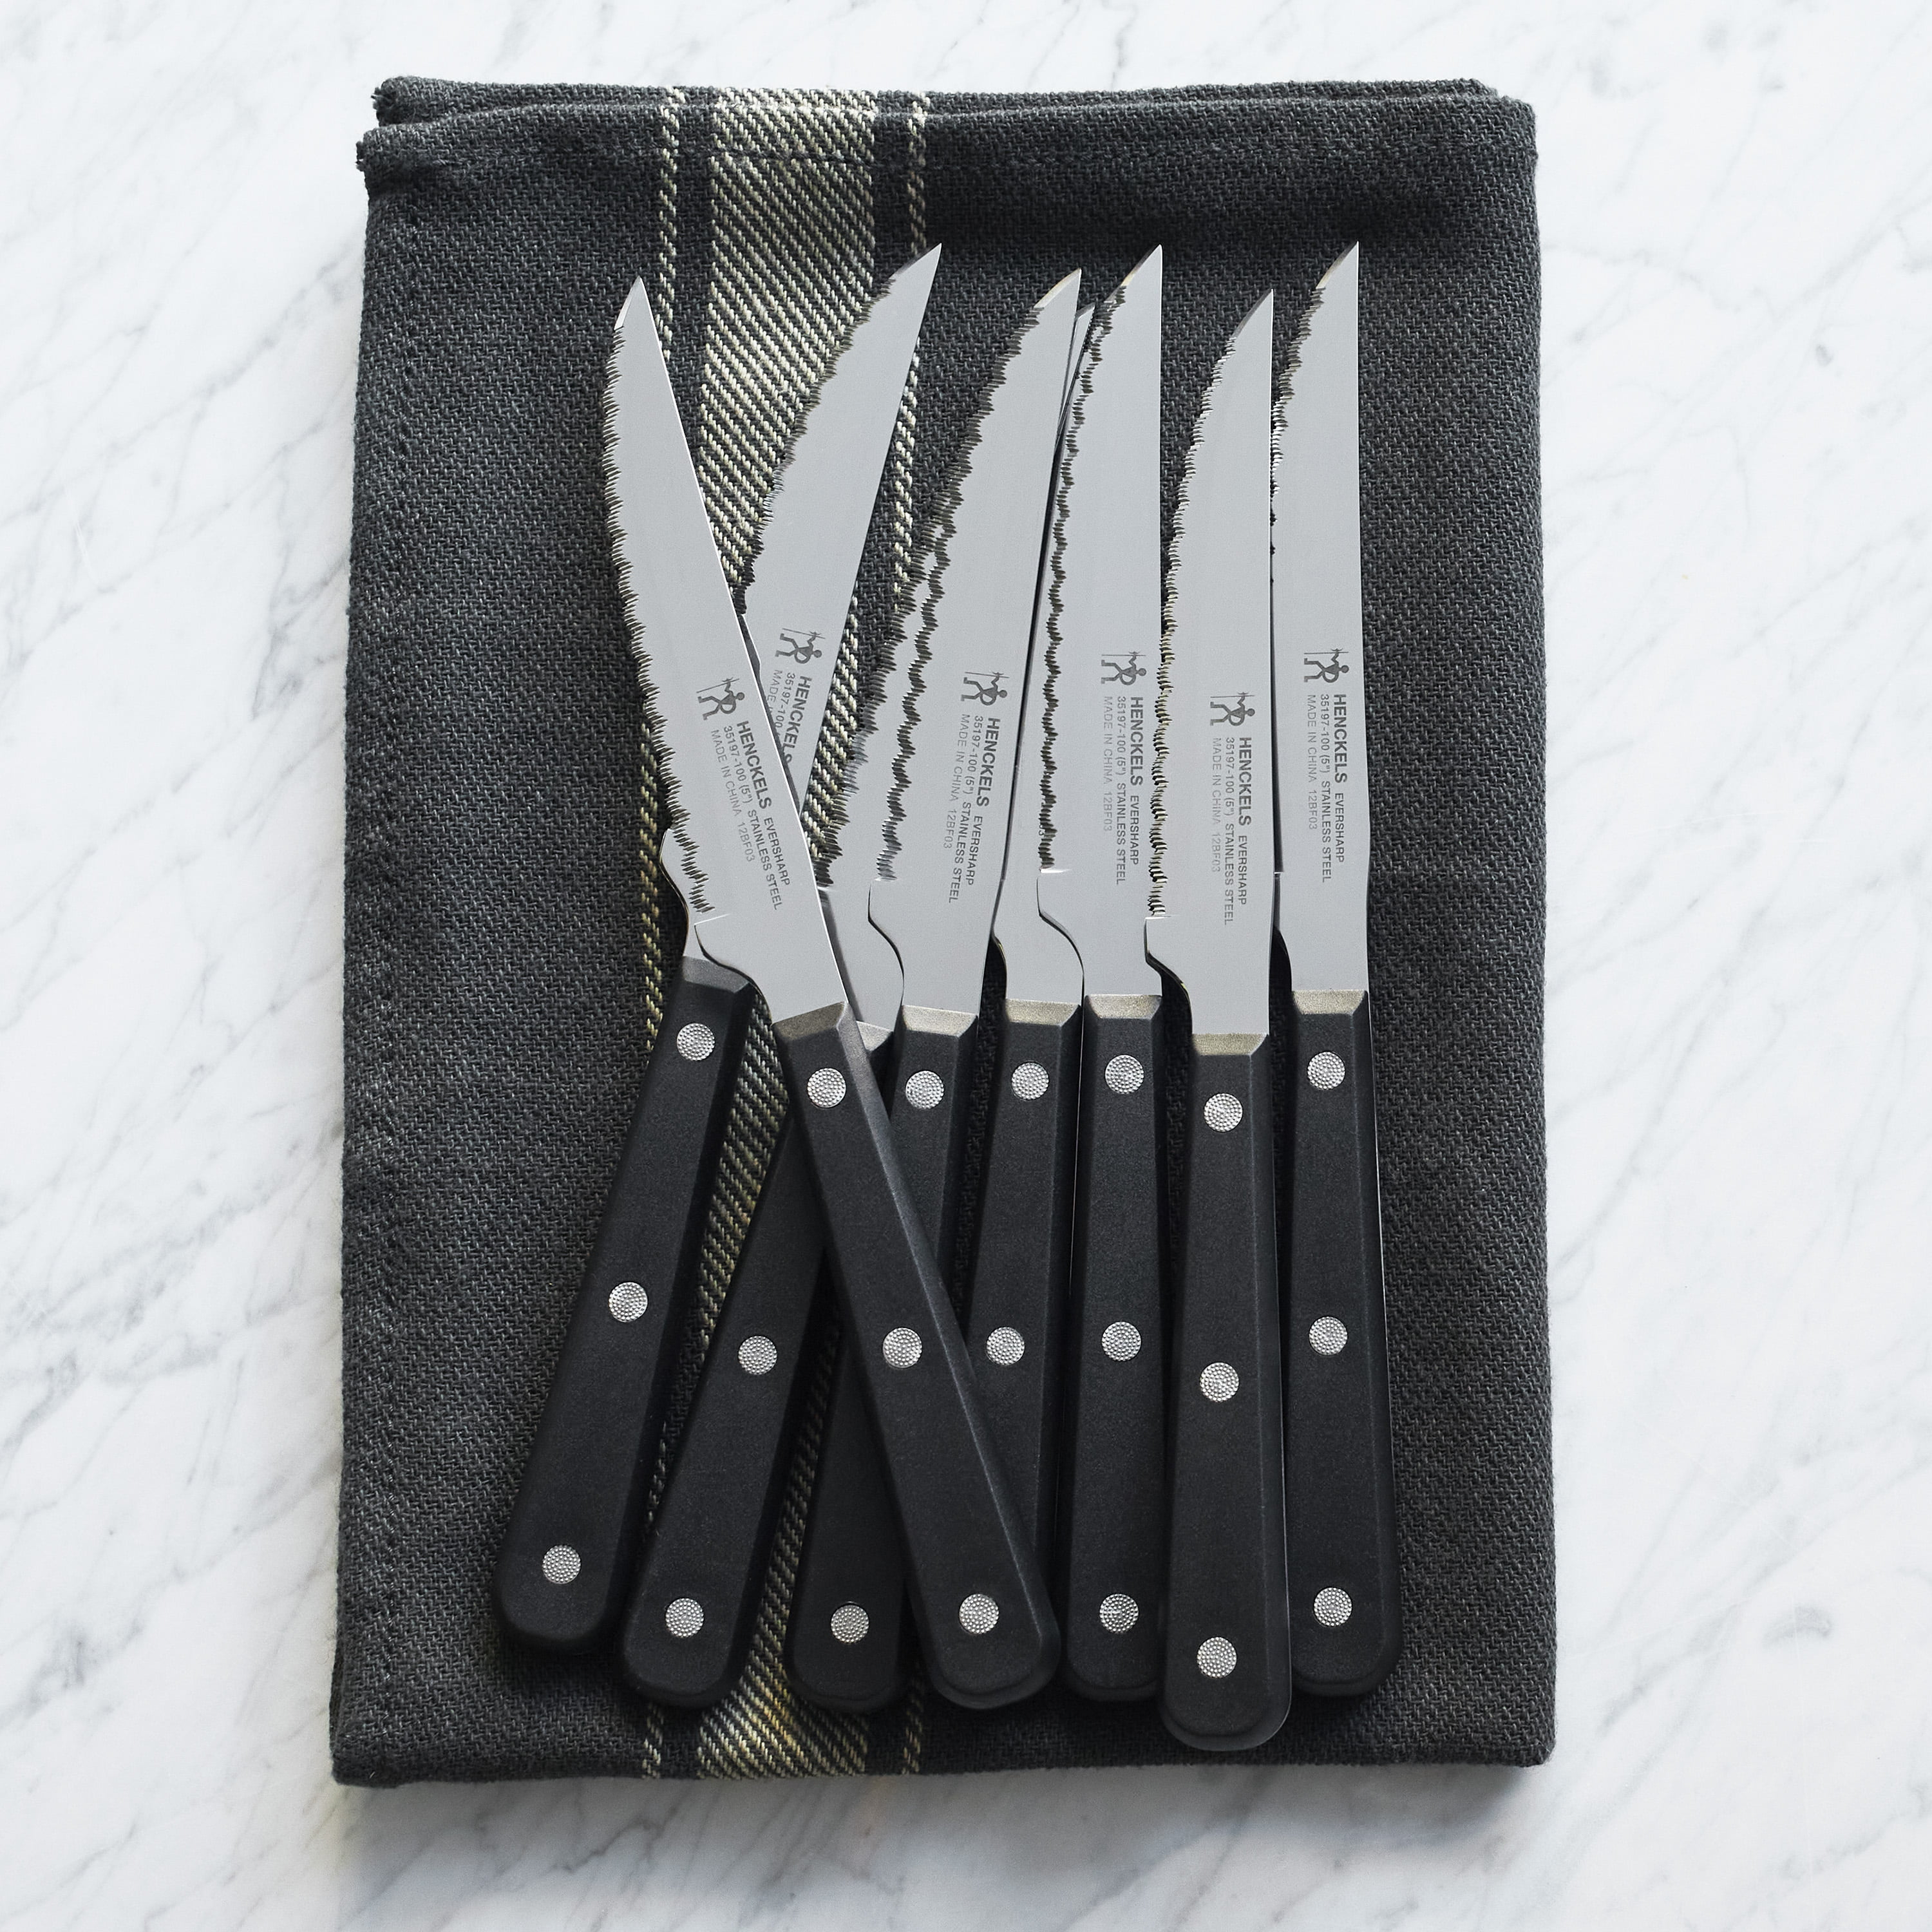 Aiheal Serrated Steak Knife Set, Stainless Steel Steak Knives Set of 8, Never Needs Sharpening Dinner Knives, Micro Serrated Steak Knives with Gift